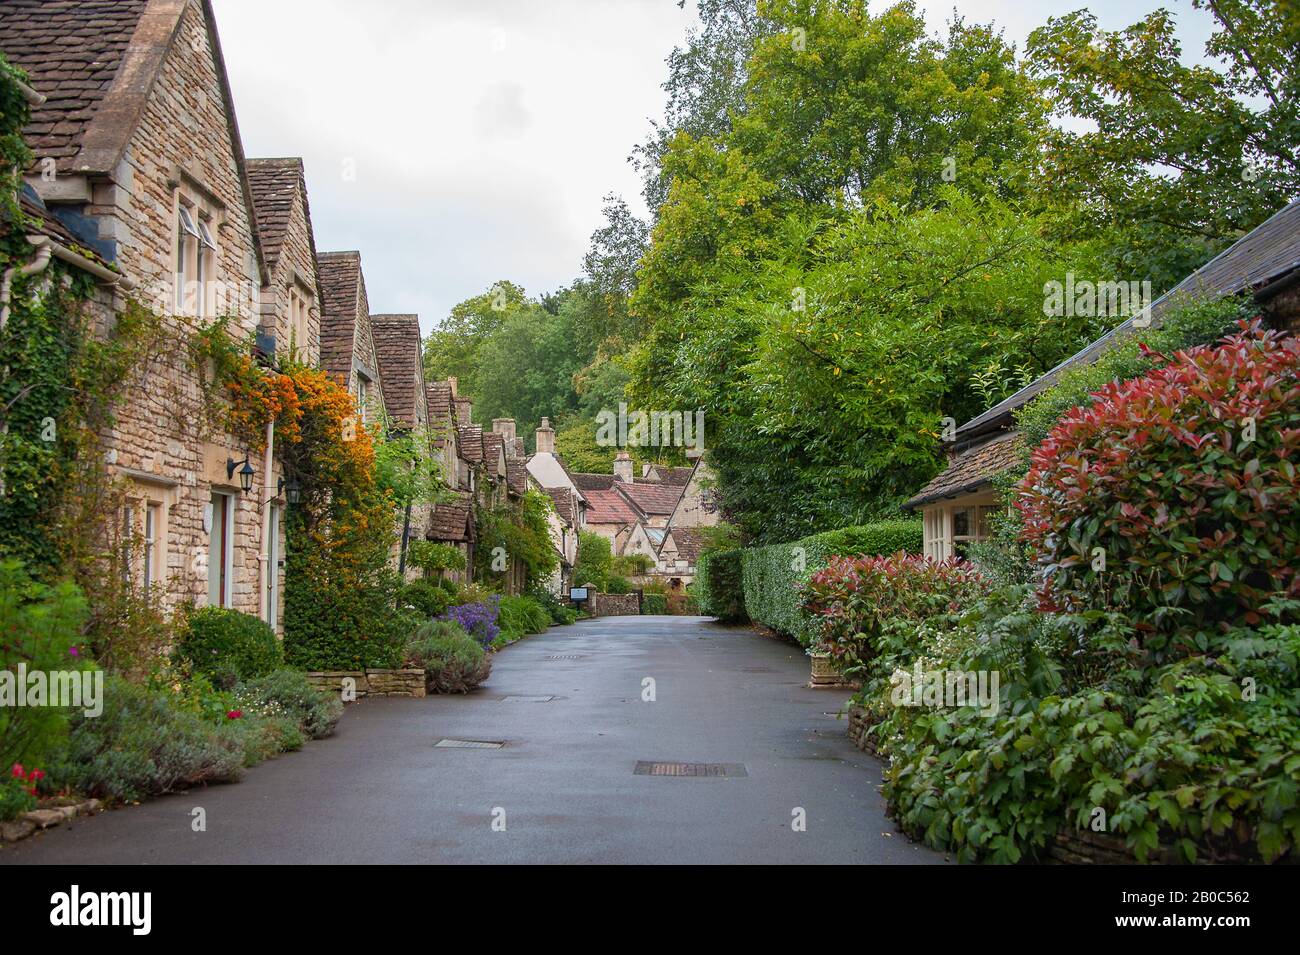 Jolie scène de rue, Castle Combe, un village de Cotswalds dans le Wiltshire, Angleterre. Réputé pour sa beauté, il s'appelle le « plus beau village d'Angleterre » Banque D'Images